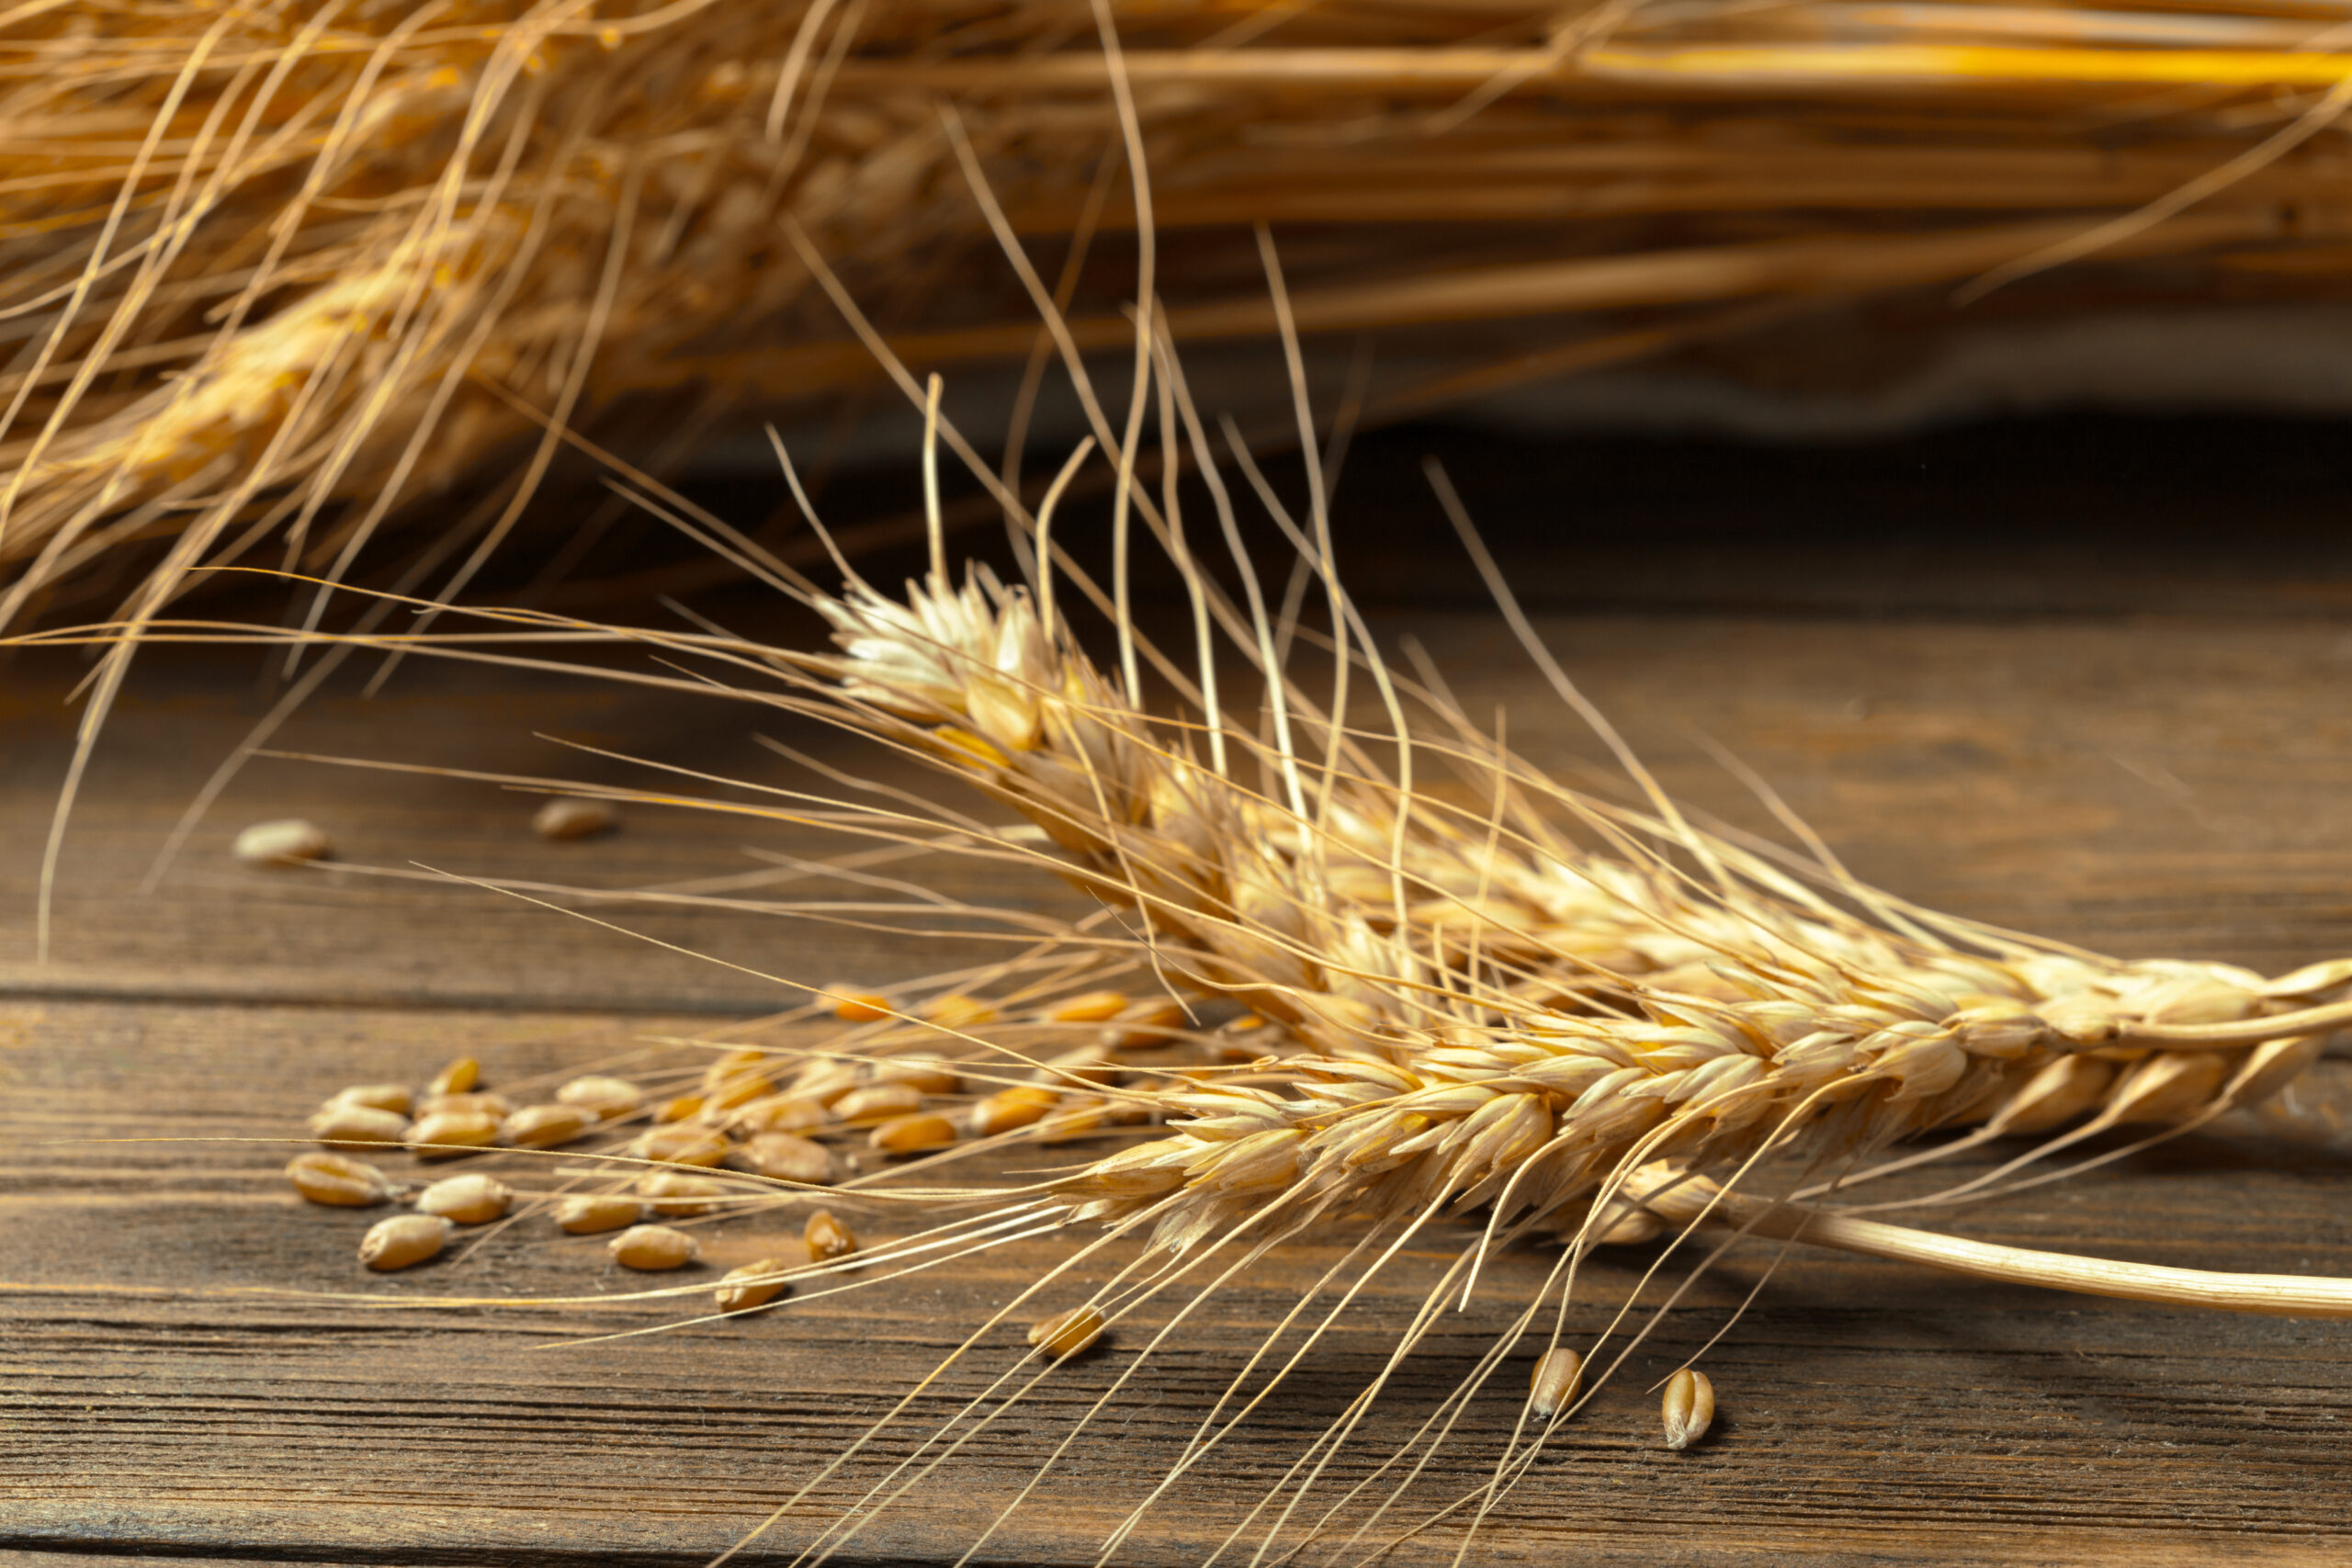  Производители зерновых культур Саратовской области получат дополнительную господдержку на 409,6 млн рублей